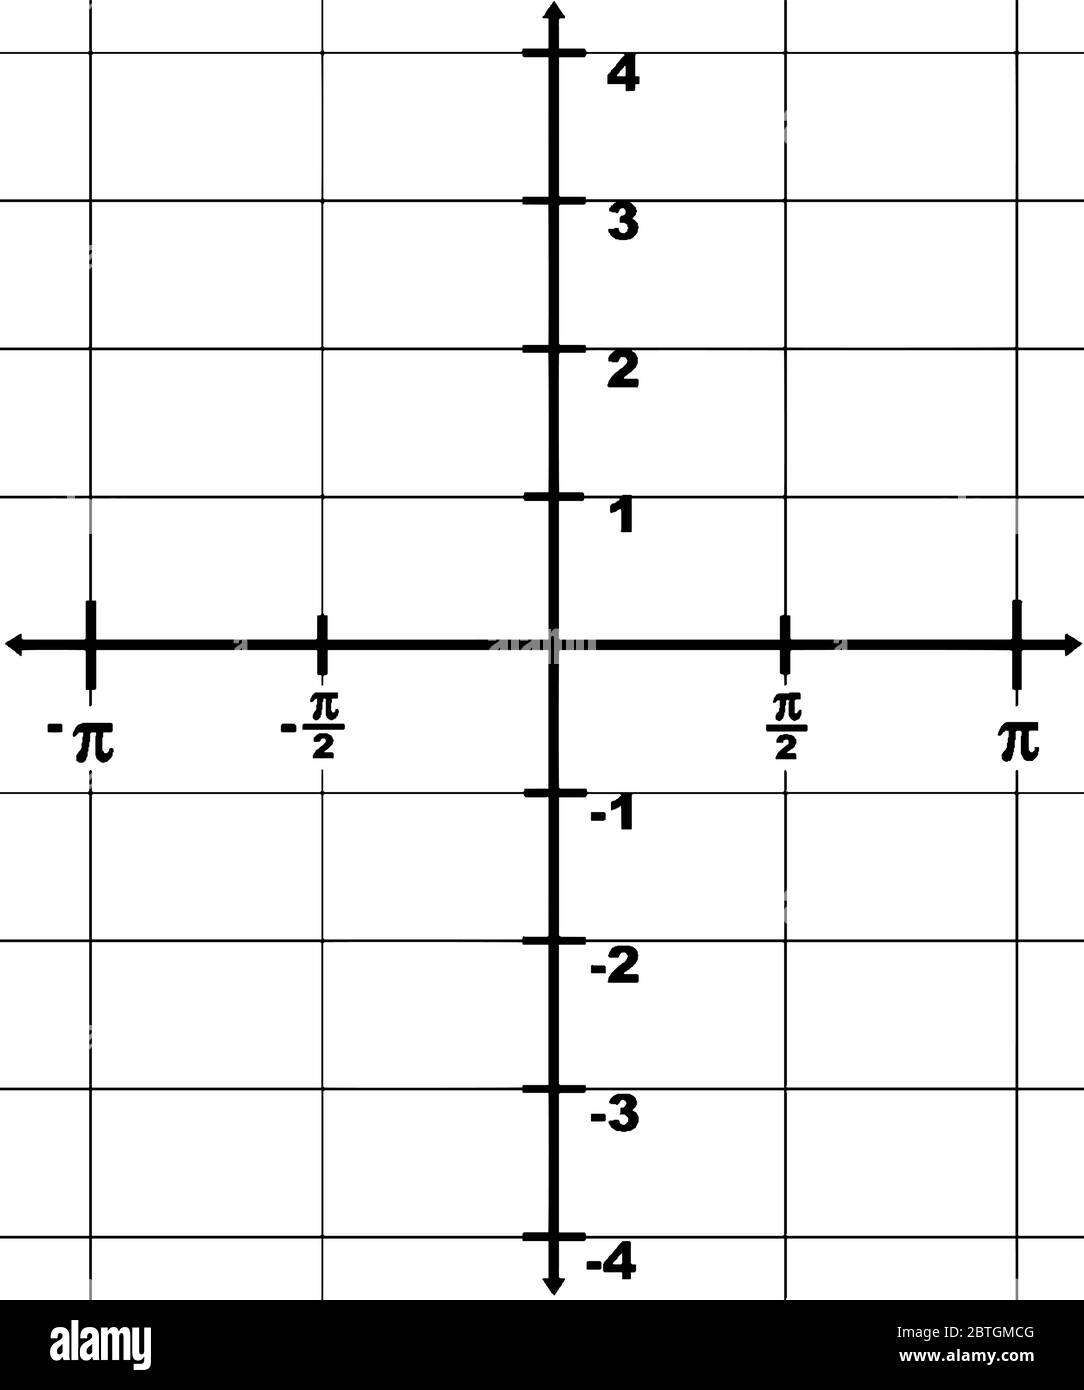 représentation graphique d'un axe x de domaine à partir de -? à ? et une plage de l'axe y de -4 à 4. L'intervalle entre deux points est 1/2?, dessin de ligne vintage Illustration de Vecteur